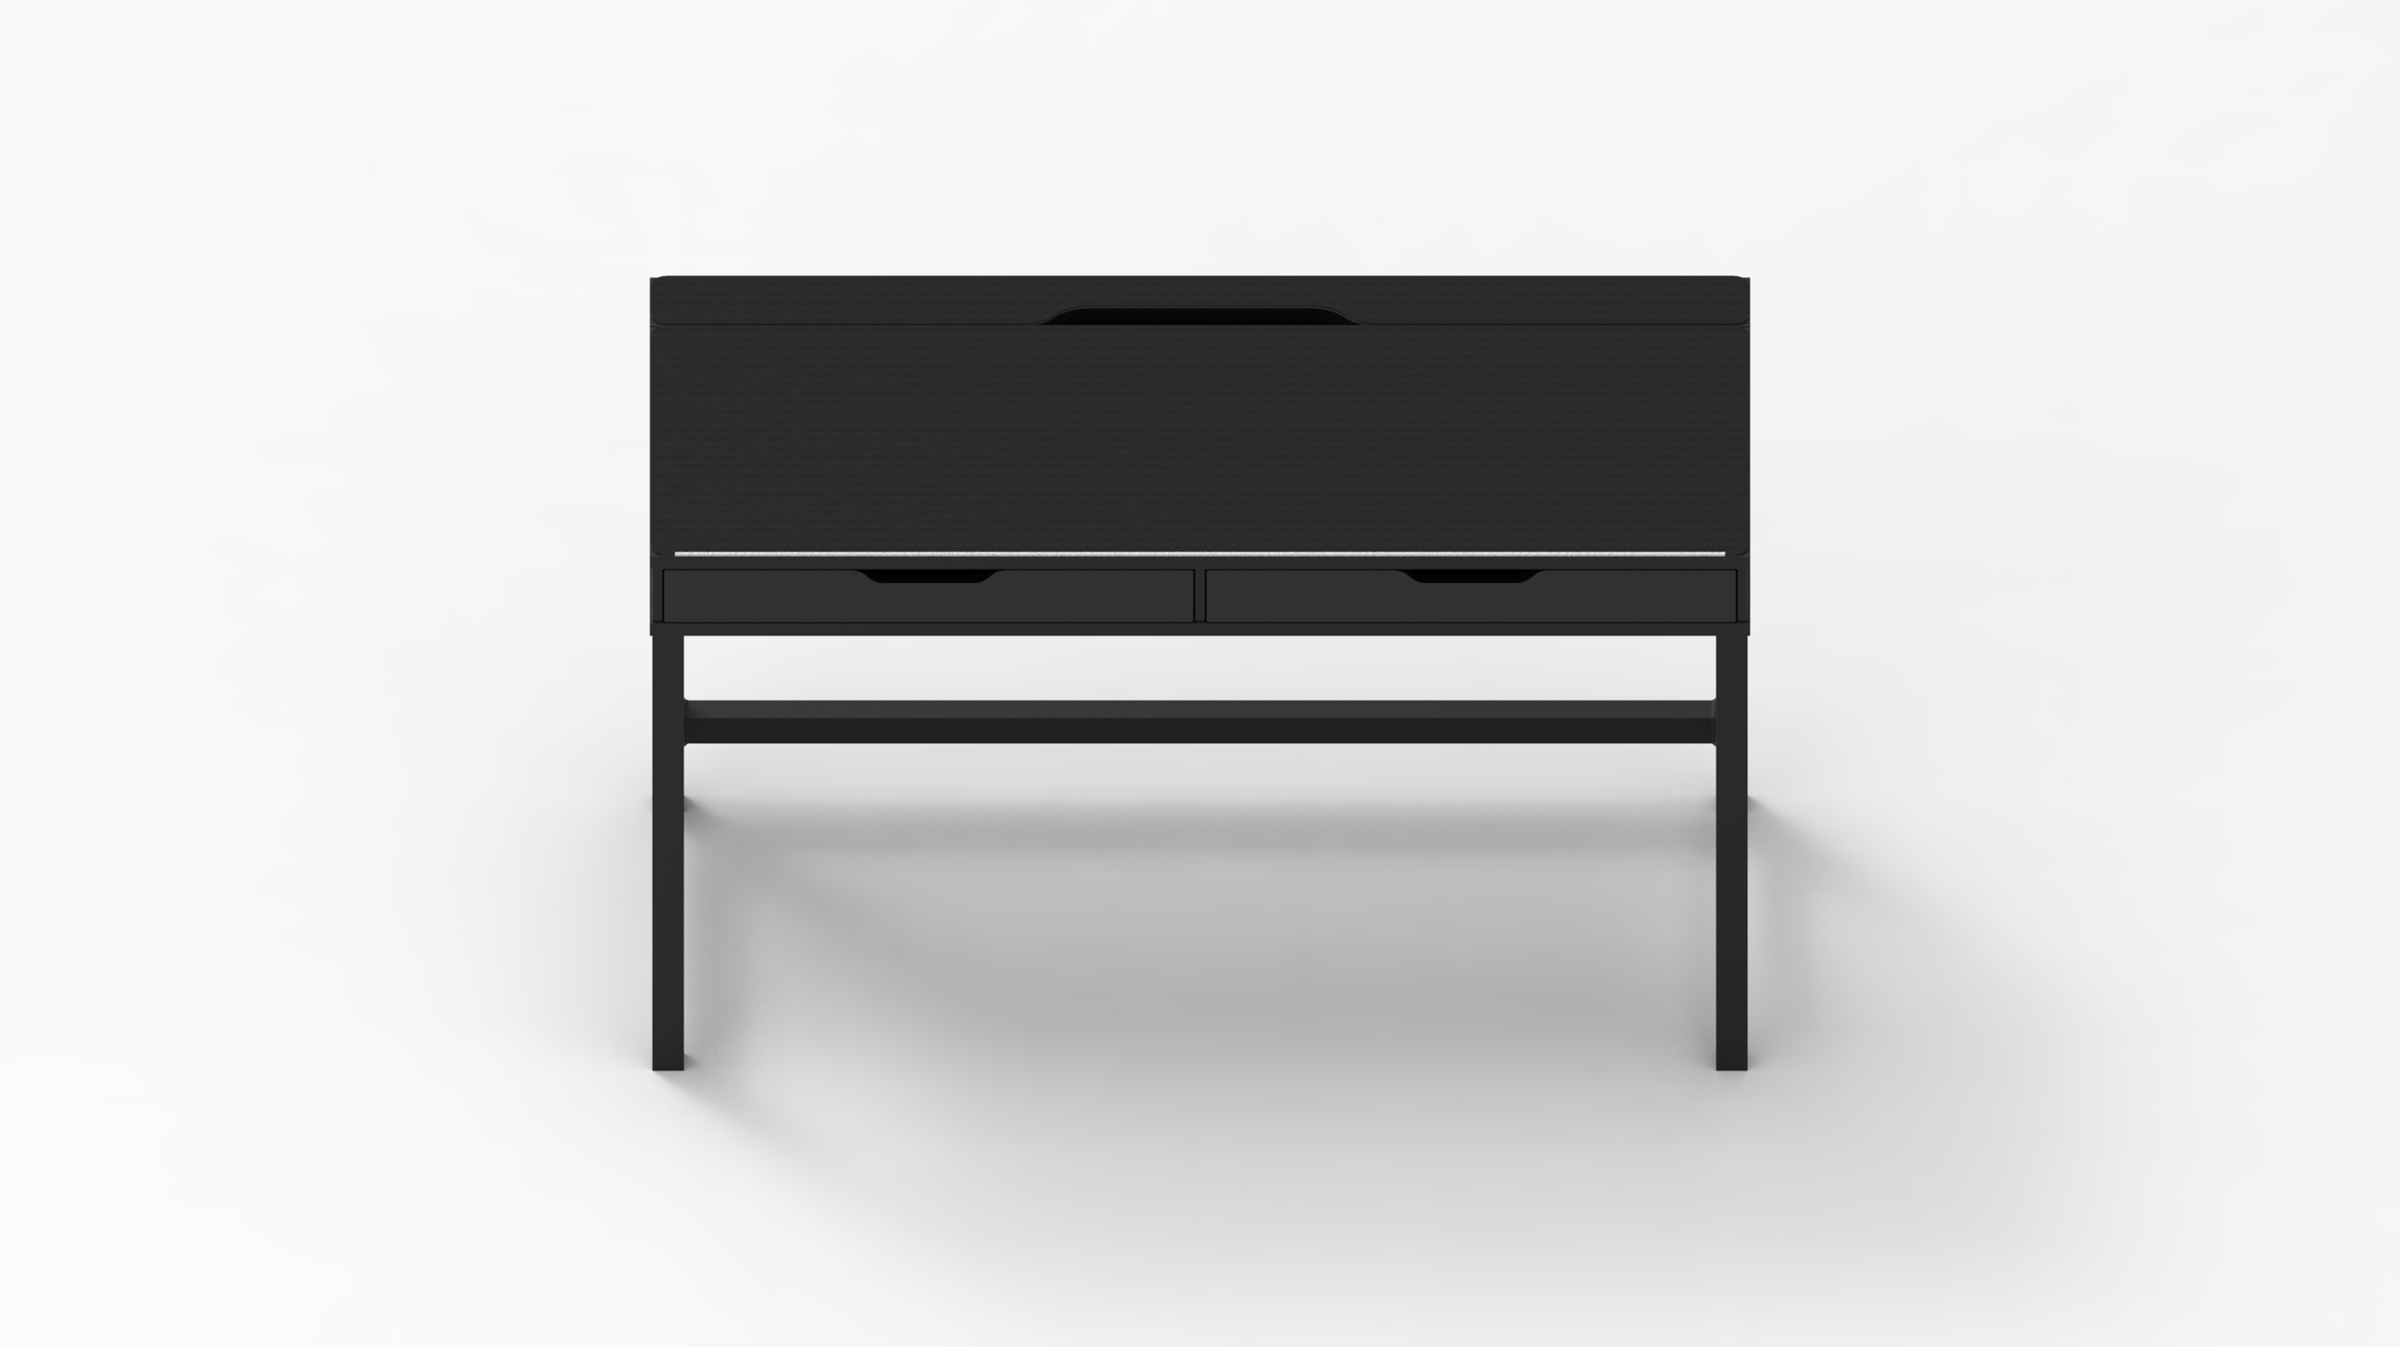 MK Black w/ White Stitching IKEA ALEX Desk Mat (52" / 132 cm) Full-desk Mouse Pad MKIUPZIDLV |59156|